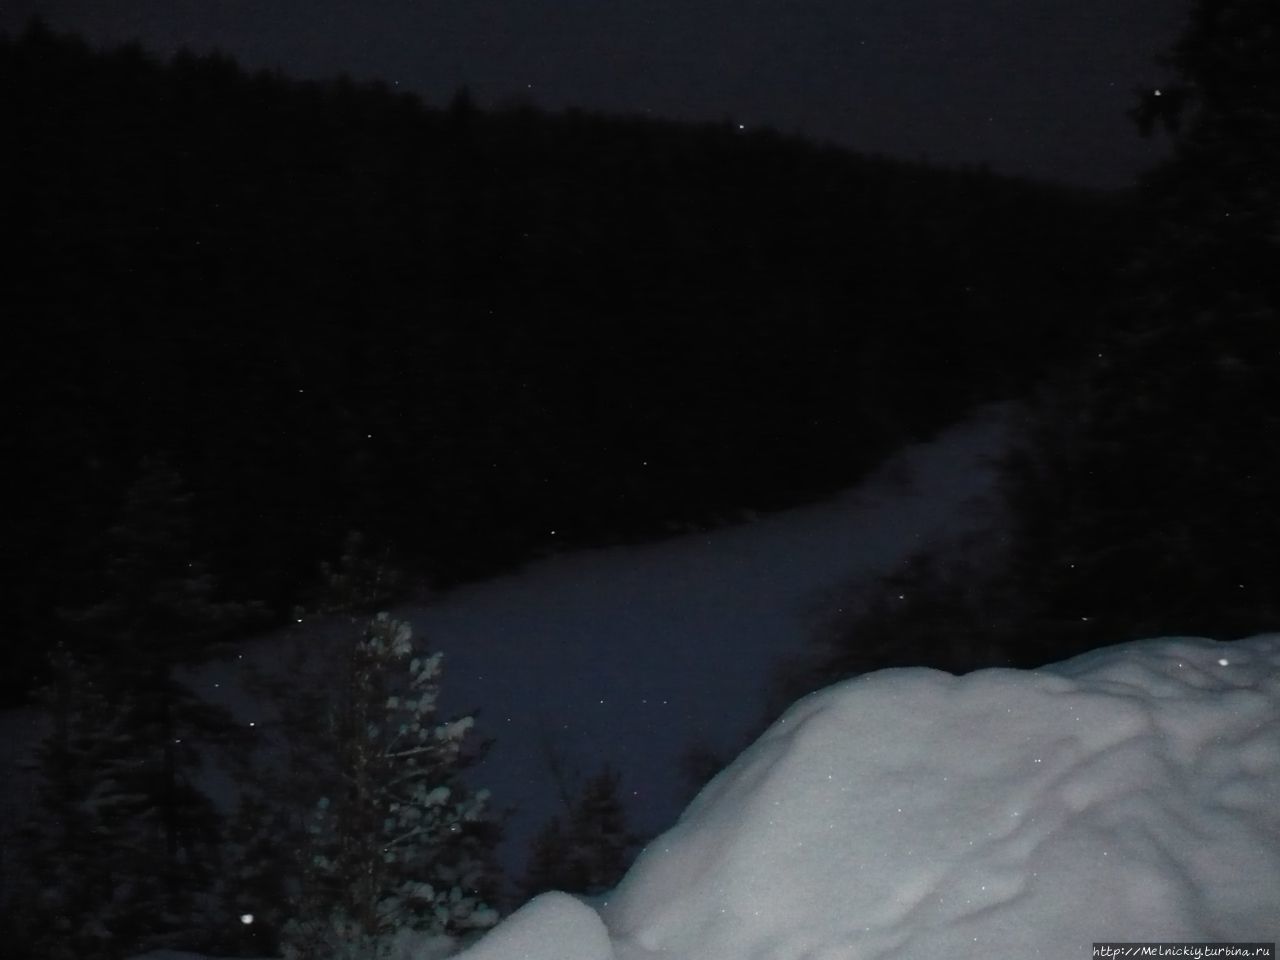 Национальный парк Хелветинярви Руовеси, Финляндия